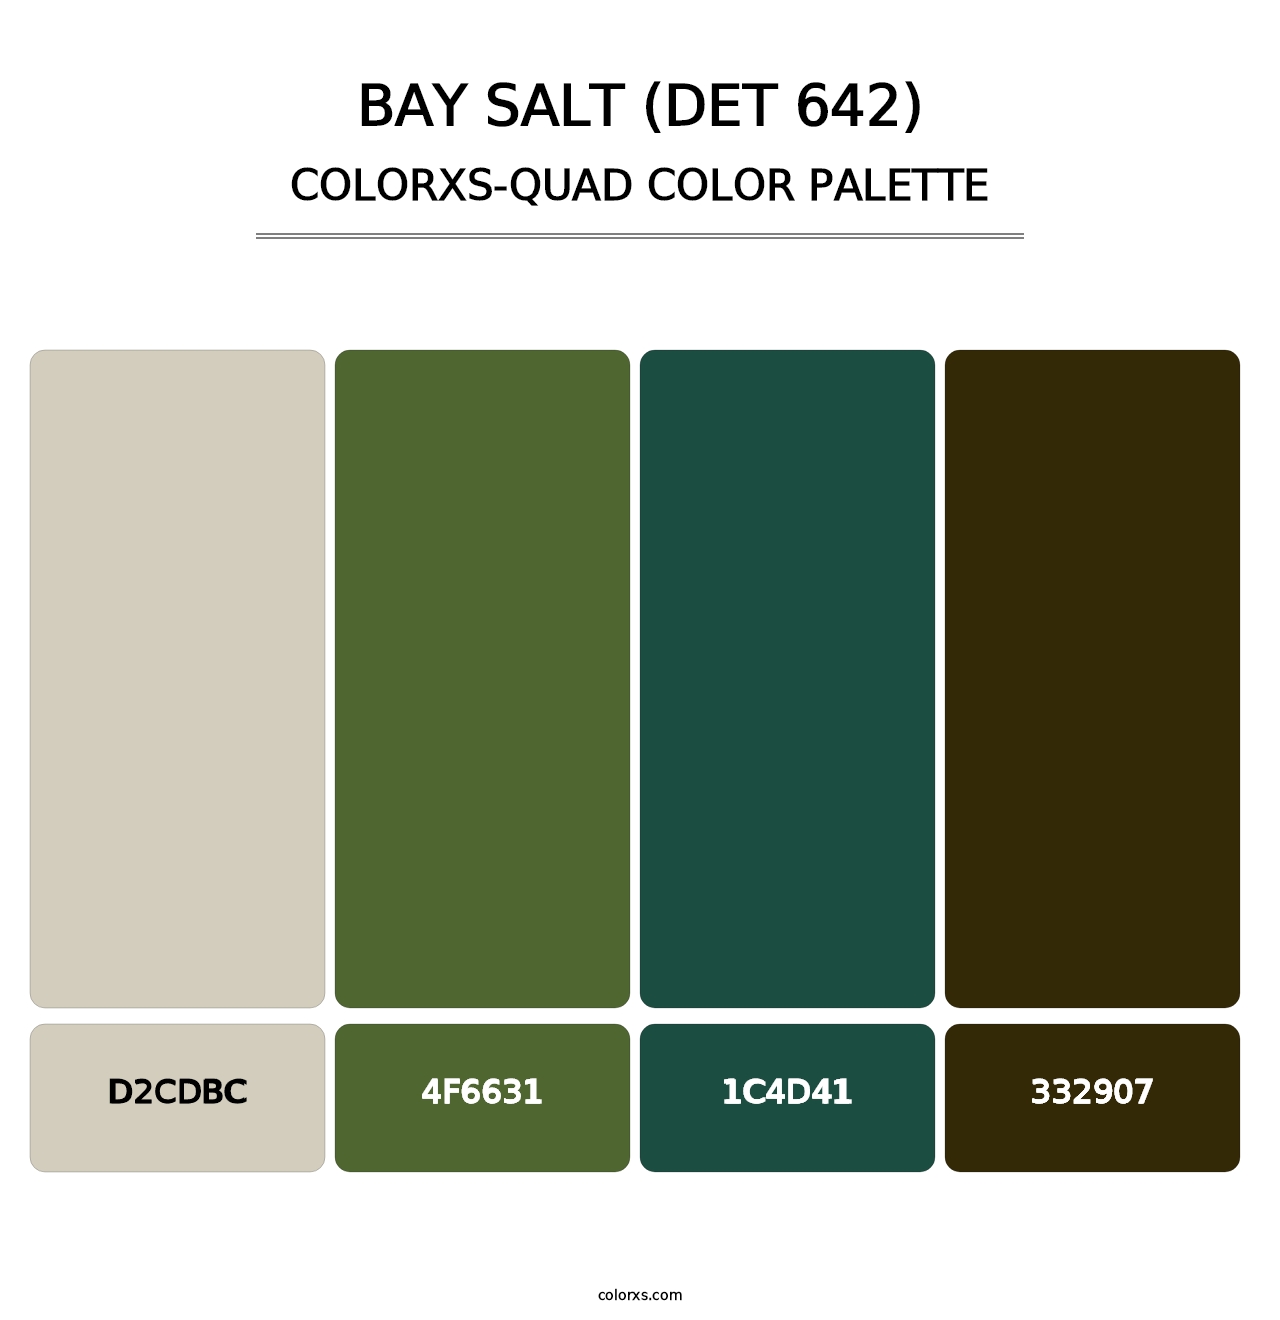 Bay Salt (DET 642) - Colorxs Quad Palette